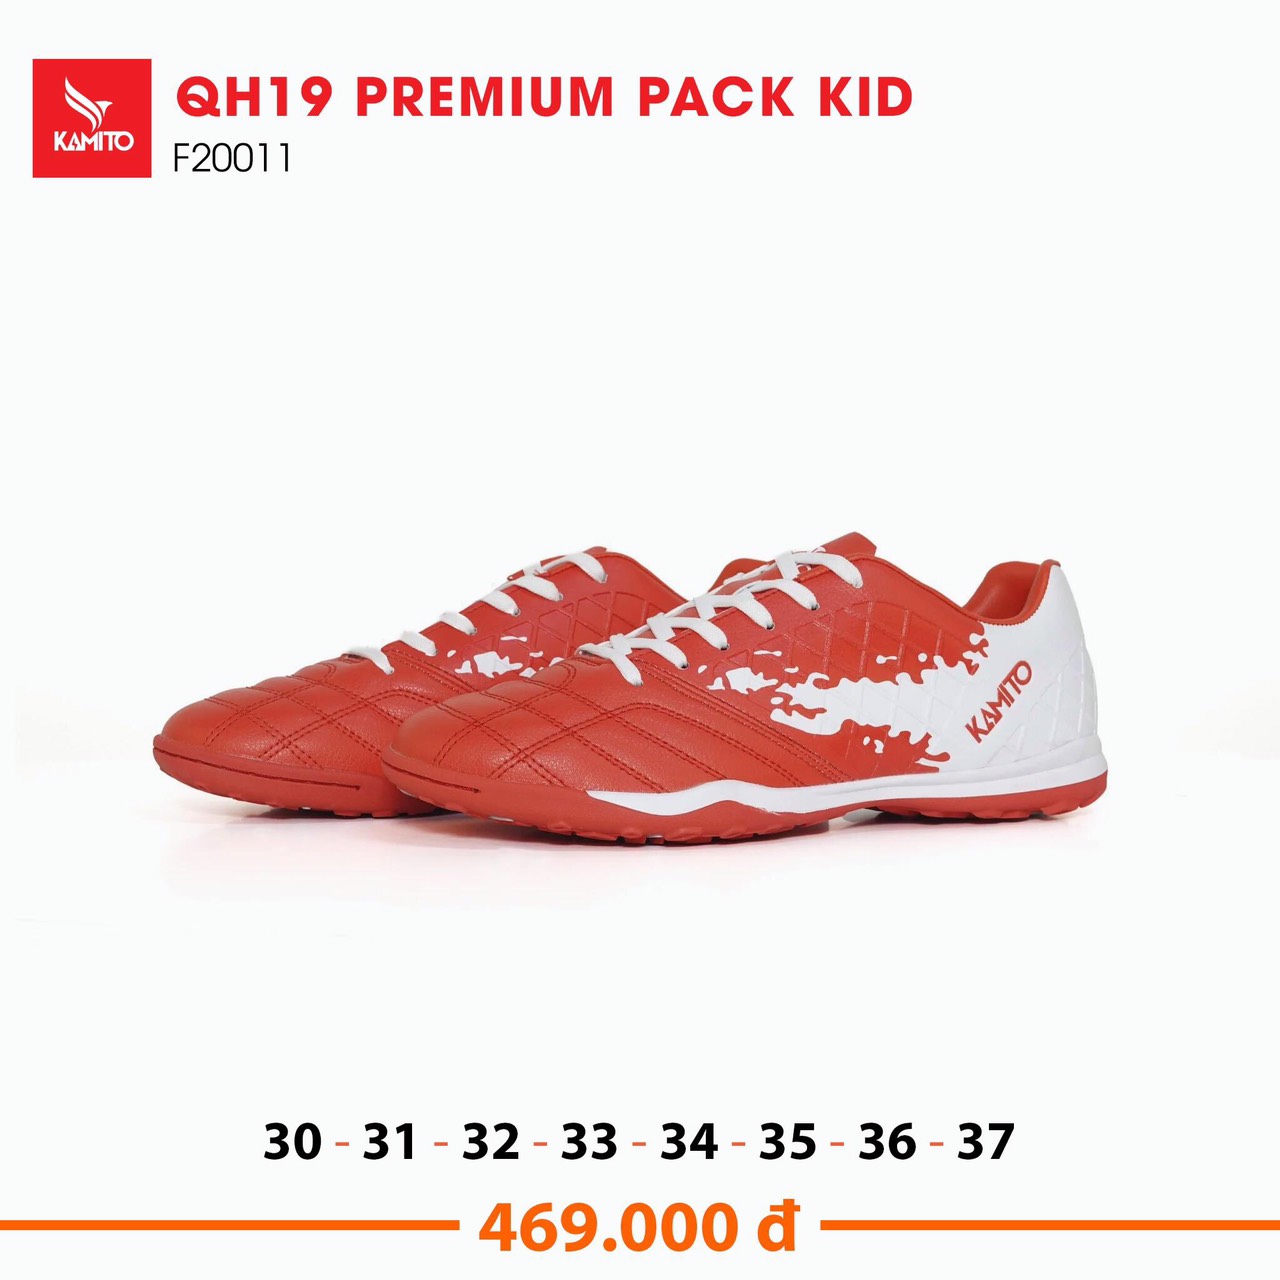 Giày Đá Bóng Trẻ Em Kamito QH19 Premium Pack Kid